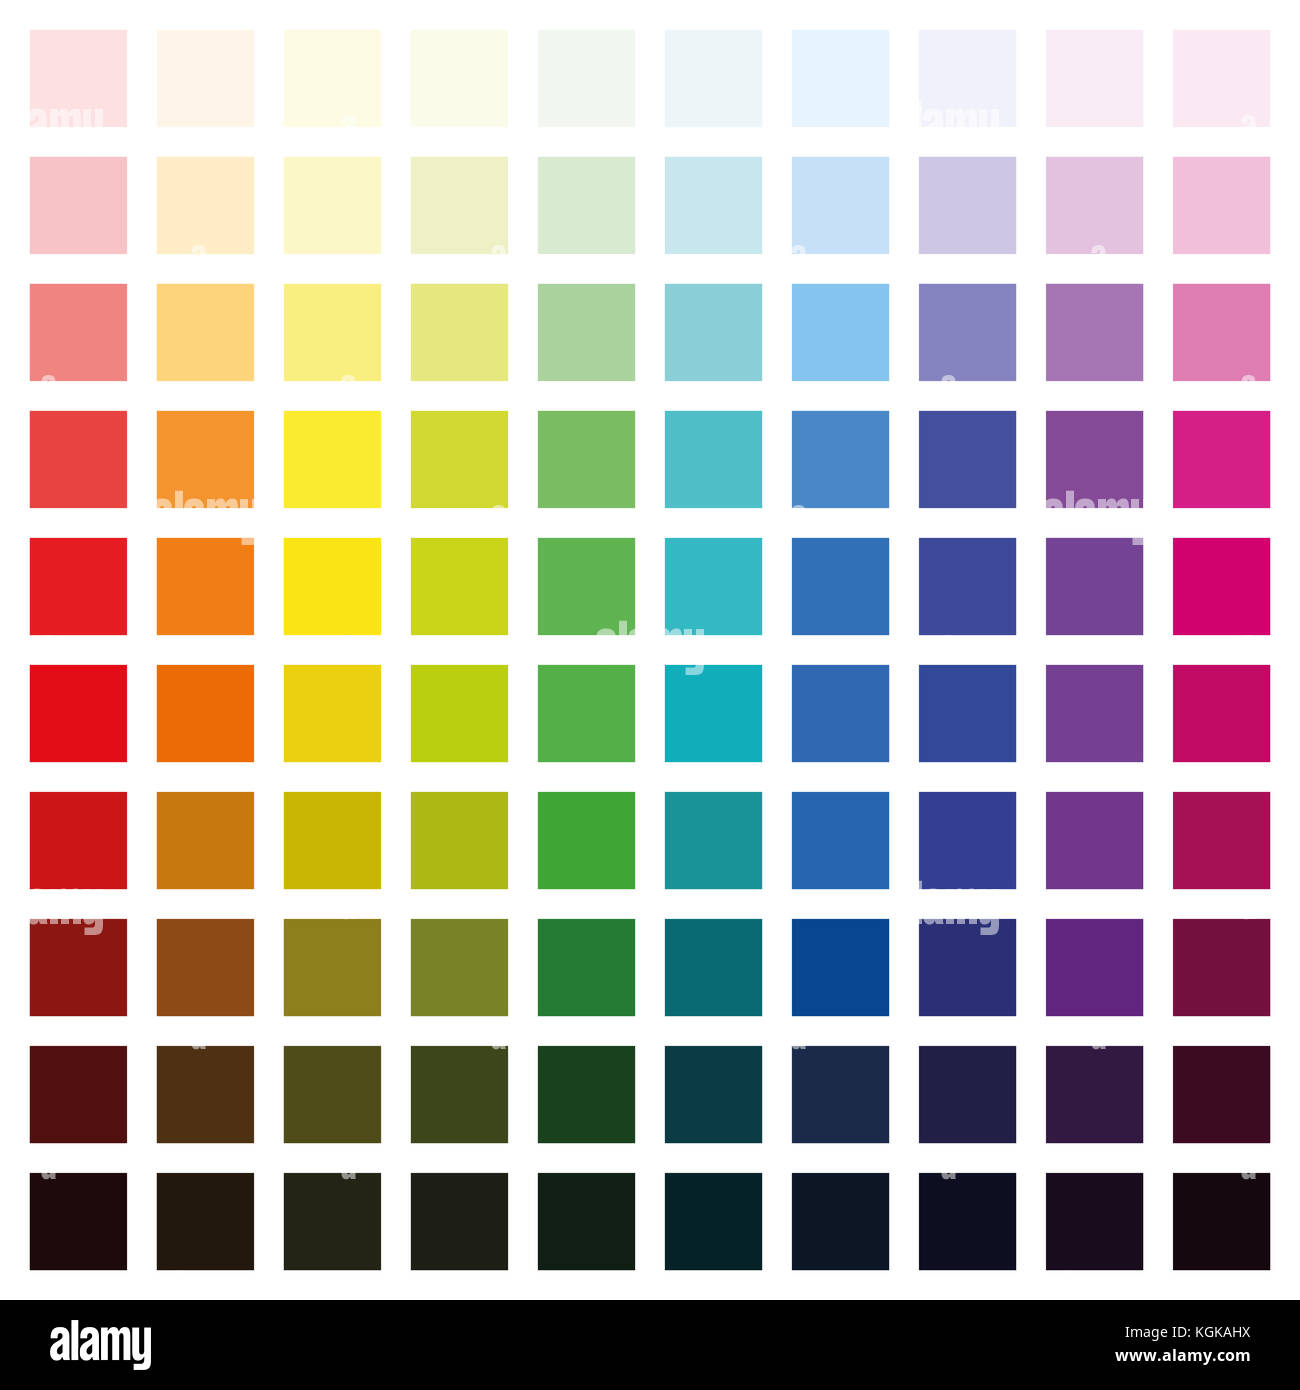 Bảng màu sắc là công cụ hữu ích giúp bạn lựa chọn màu sắc hoàn hảo cho dự án của mình. Hãy cùng khám phá đa dạng của bảng màu sắc và tìm thấy sự kết hợp màu sắc độc đáo cho tác phẩm của bạn. Nhấn vào hình ảnh này để bắt đầu khám phá.